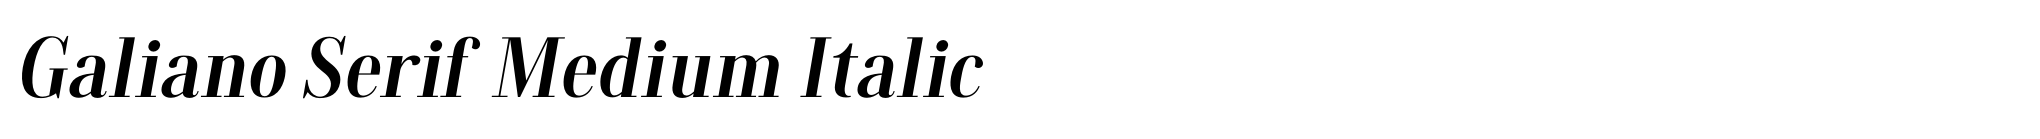 Galiano Serif Medium Italic image